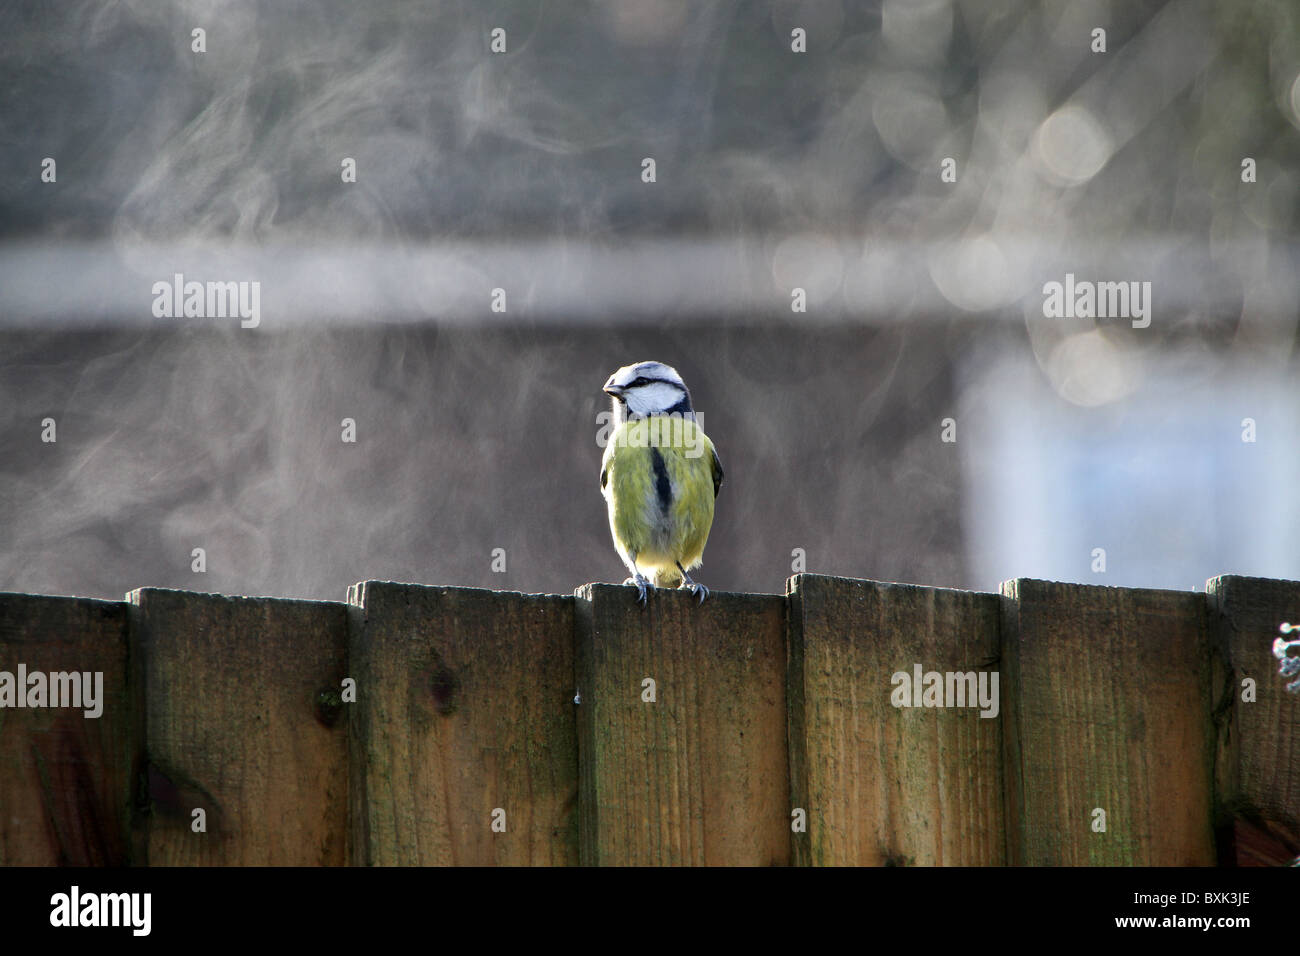 Eine Blaumeise hockt auf einem Zaun, während scheinbar ein Dampfbad nehmen. Stockfoto